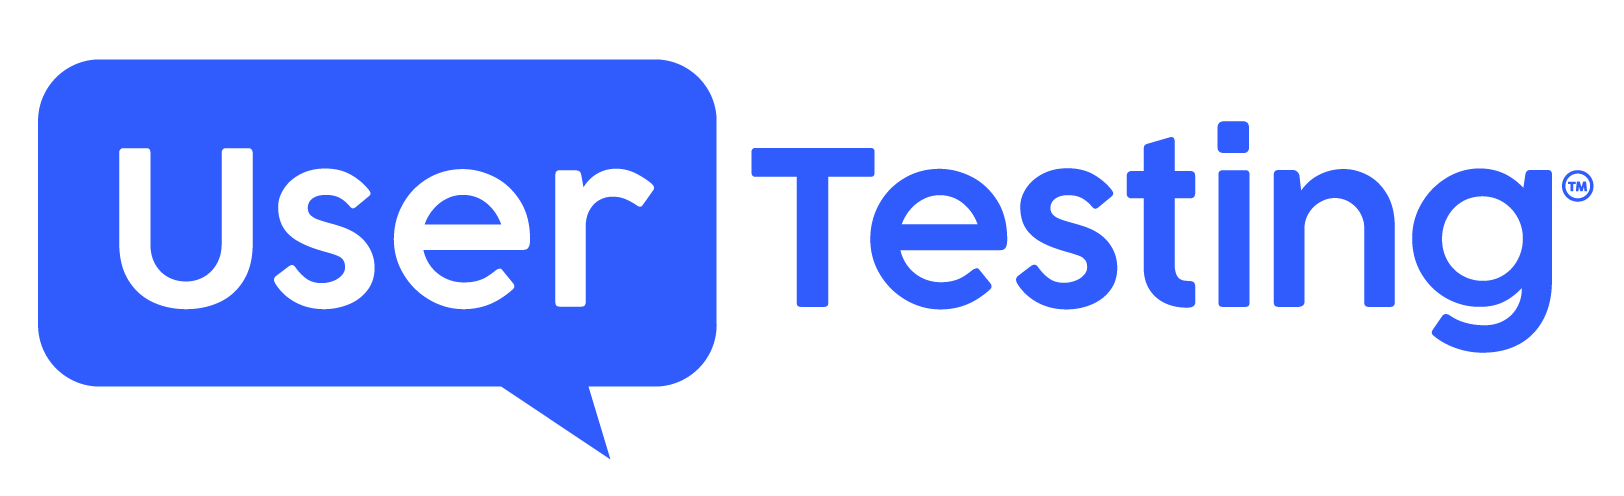 Usertesting com. USERTESTING. USERTESTING logo. User Testing. User Testing logo.